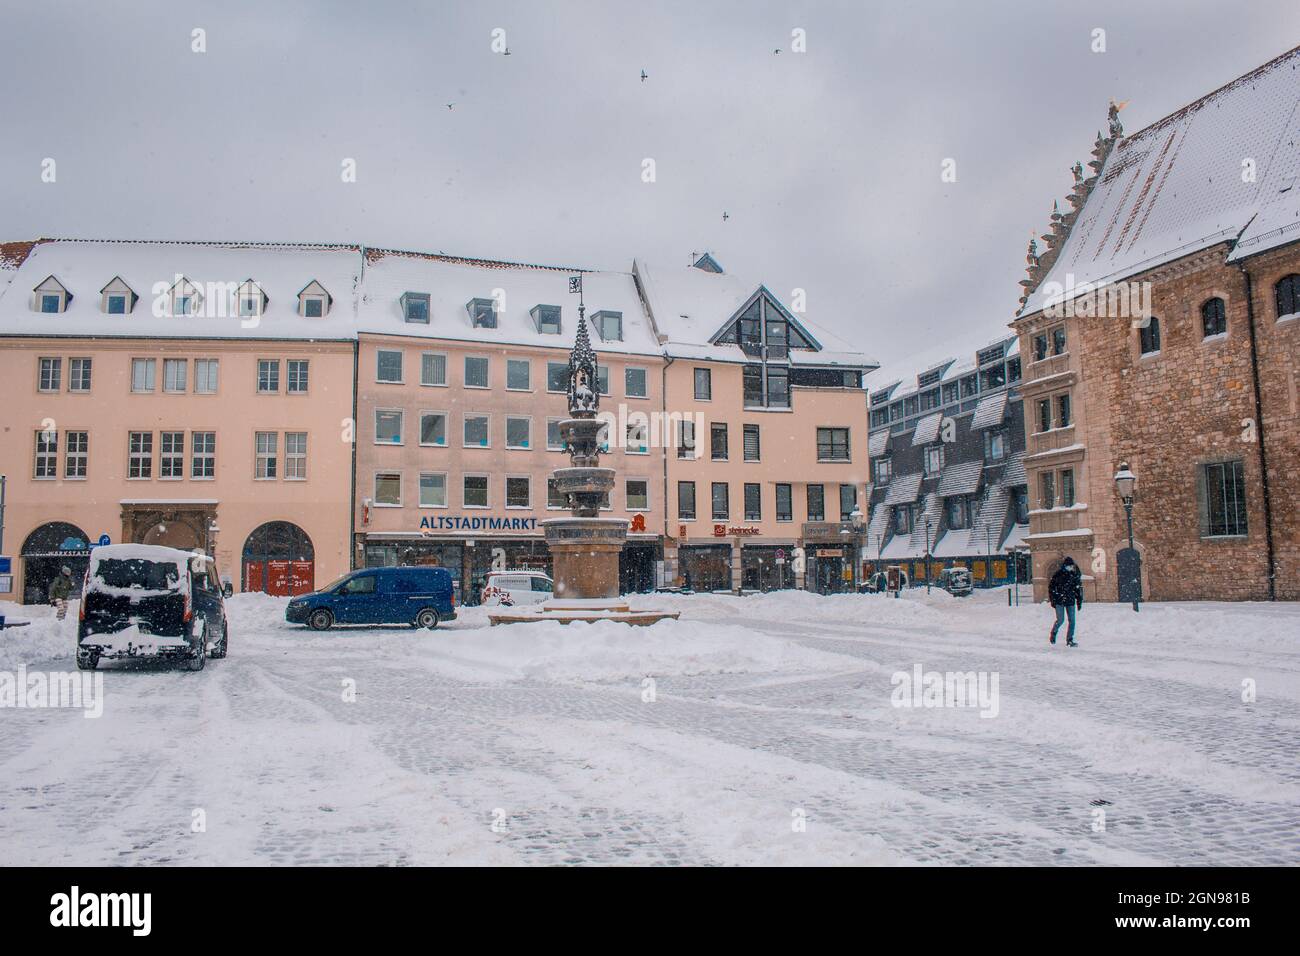 Braunschweig, Germania - 9 febbraio 2021: Piazza del mercato della città vecchia nel centro della città di Braunschweig durante l'inverno Foto Stock